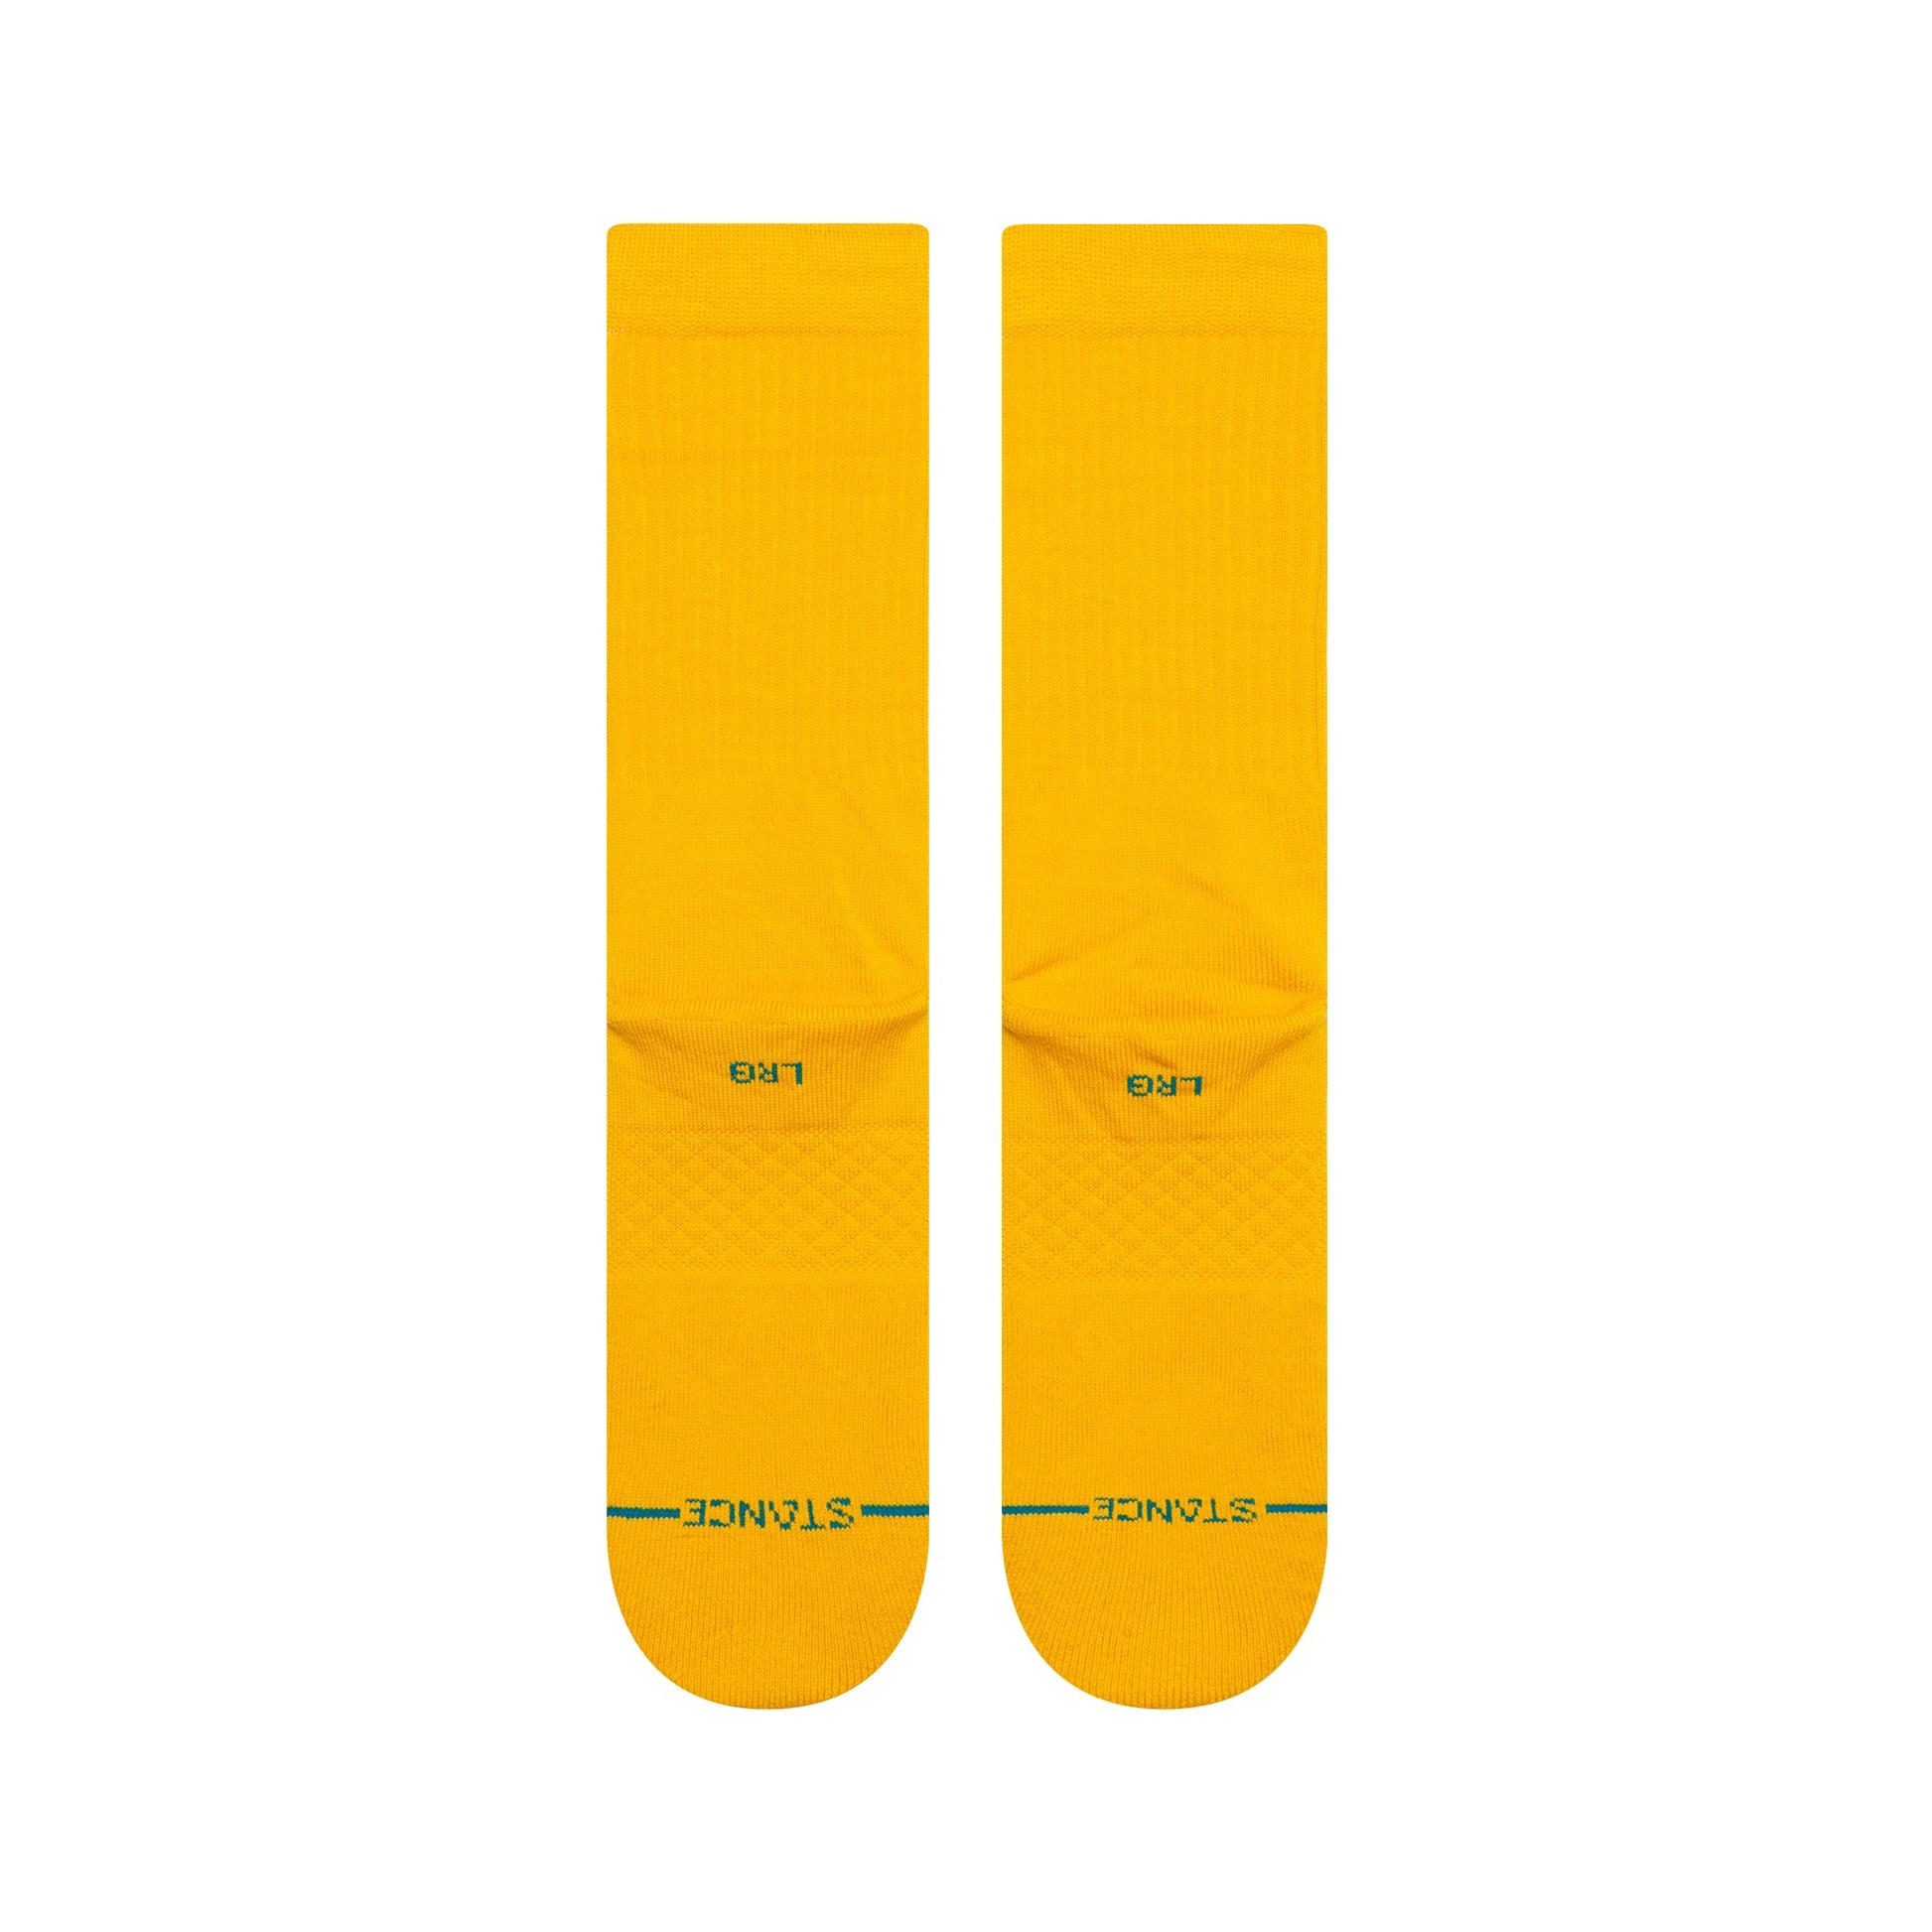 Chaussettes mi-mollet jaunes Icon de Stance